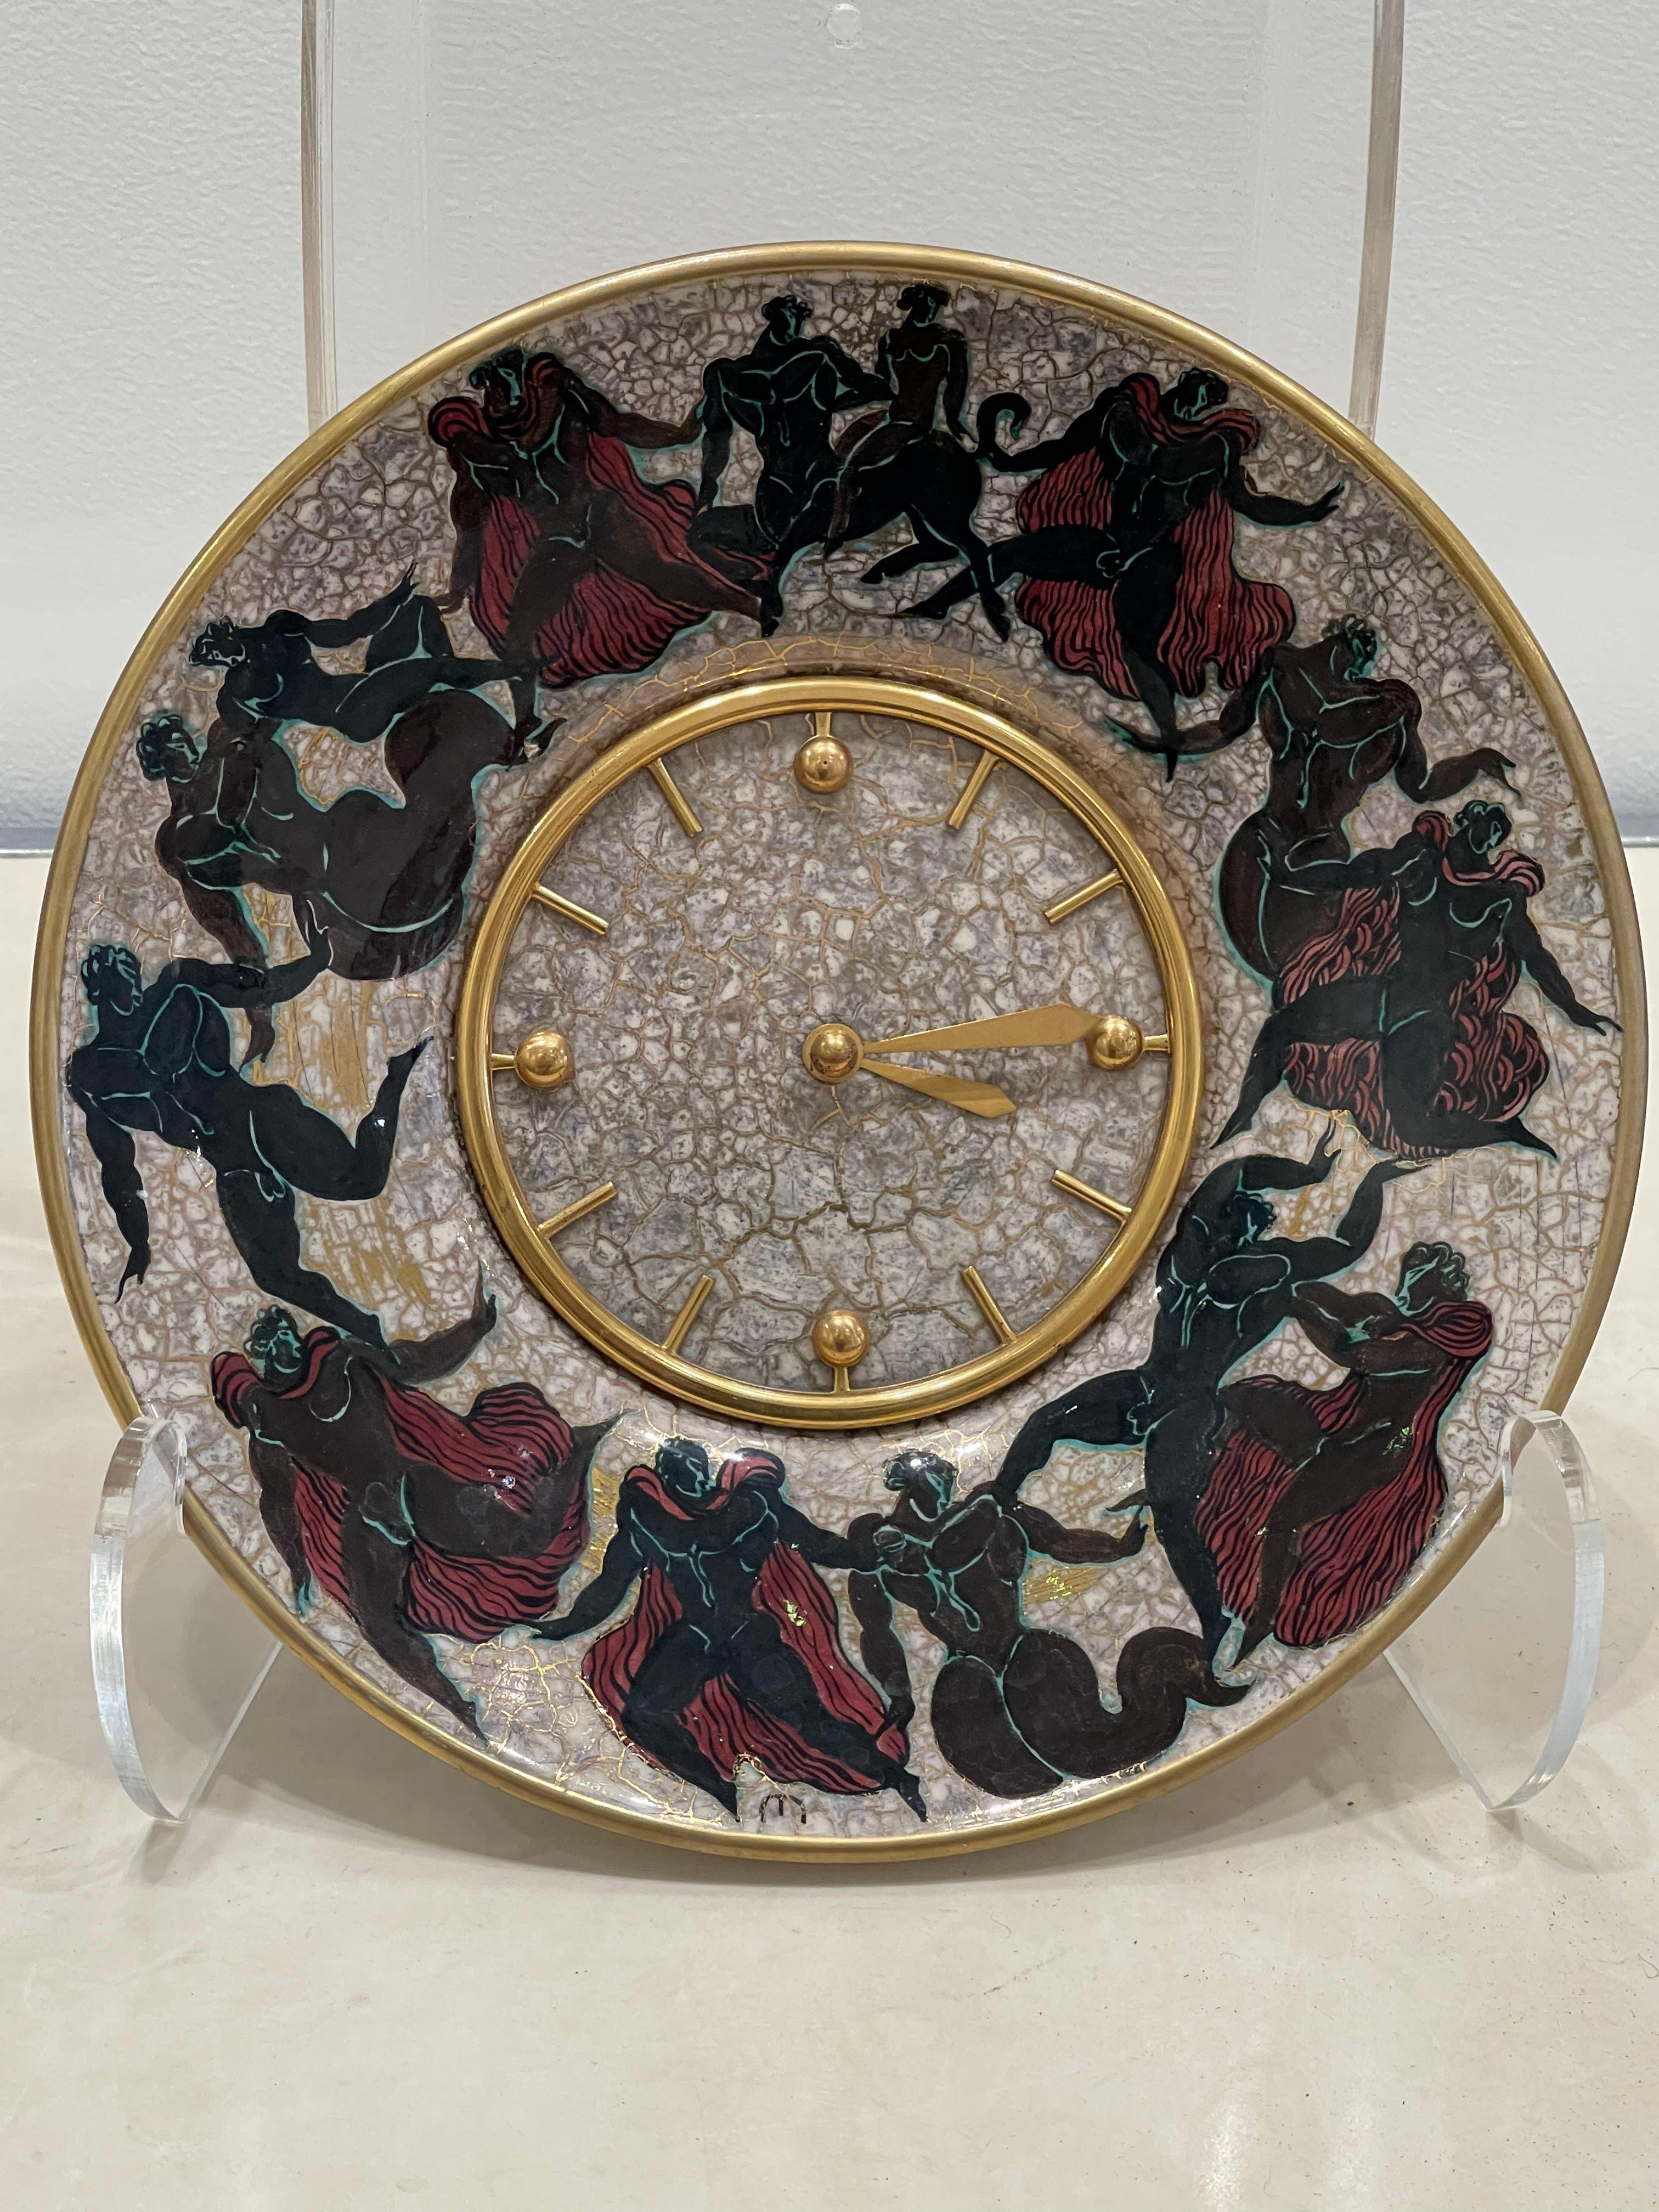 Wunderschöne Uhr des berühmten Uhrmachers Hour Lavigne und des Keramikers Jean Léon Mayodon (1893-1967)

Diese Uhr besteht aus einer zentralen Uhr von Hour Lavigne, die auf einer von J.L. realisierten Platte montiert ist. Mayodon. Diese Uhr ist für